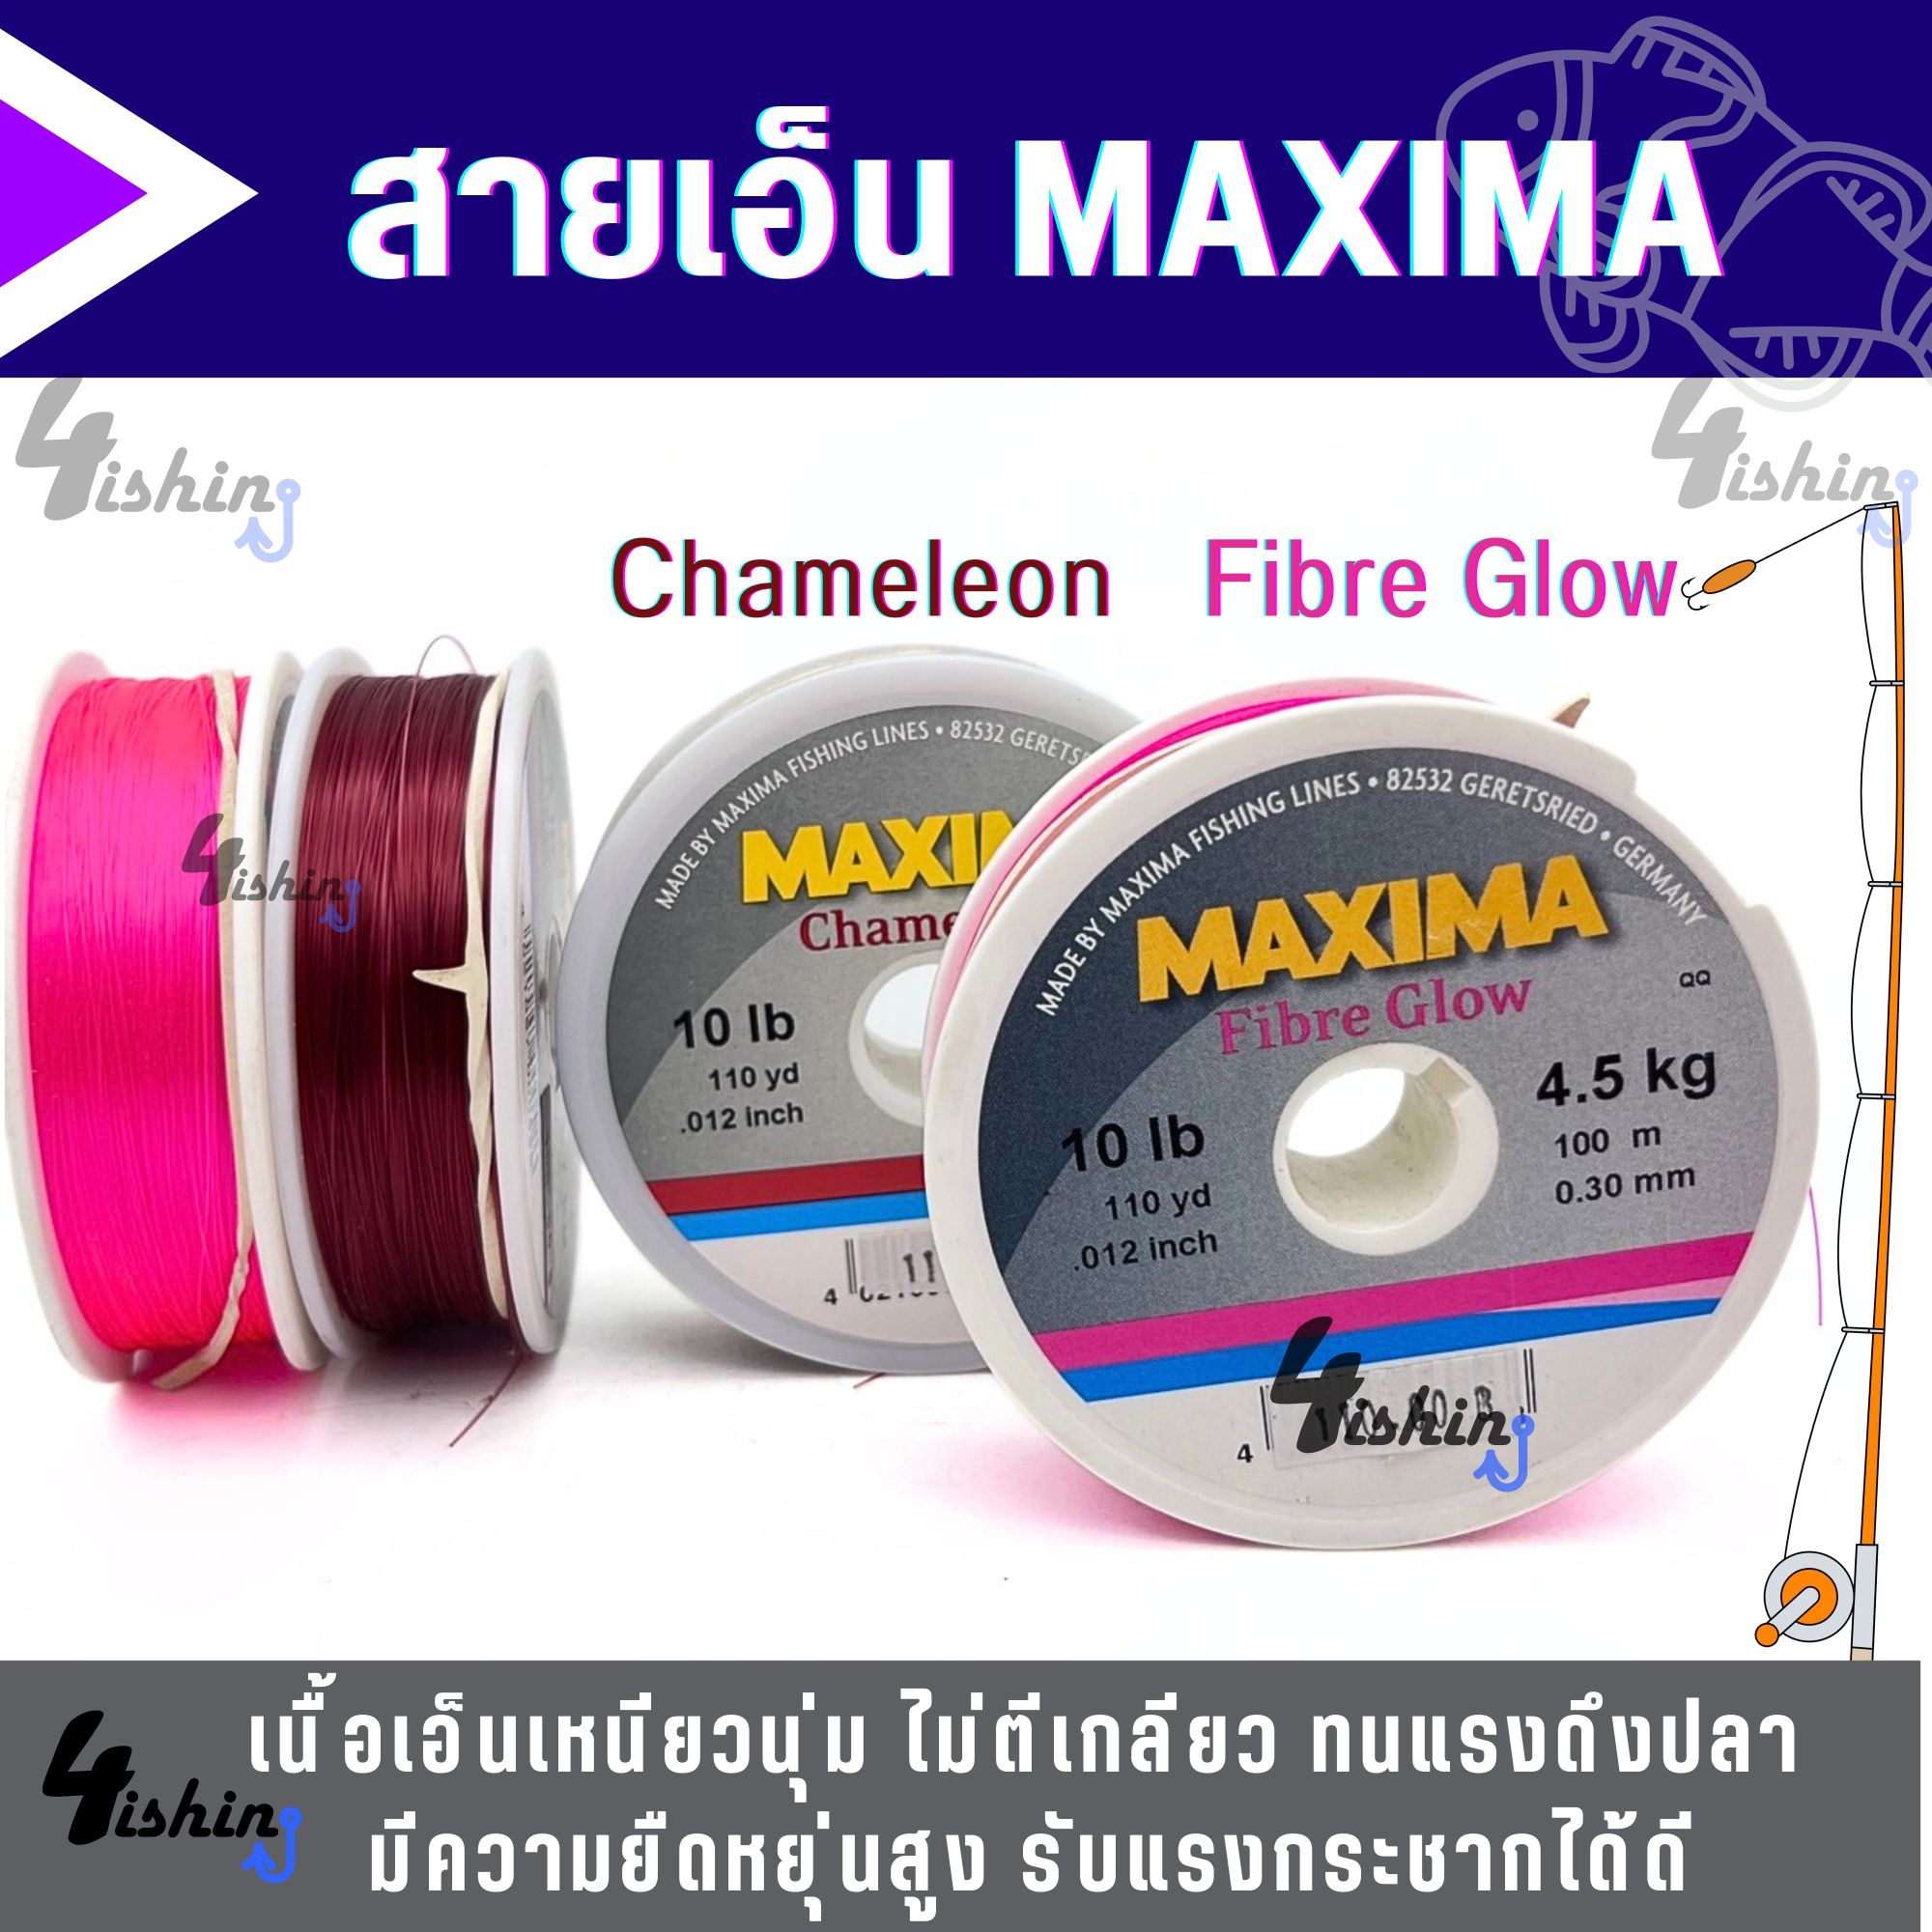 สายเอ็นตกปลา แม็กซิม่า MAXIMA ยาว 100 เมตร ( มี 2 สี Chameleon และ Fibre  Glow )